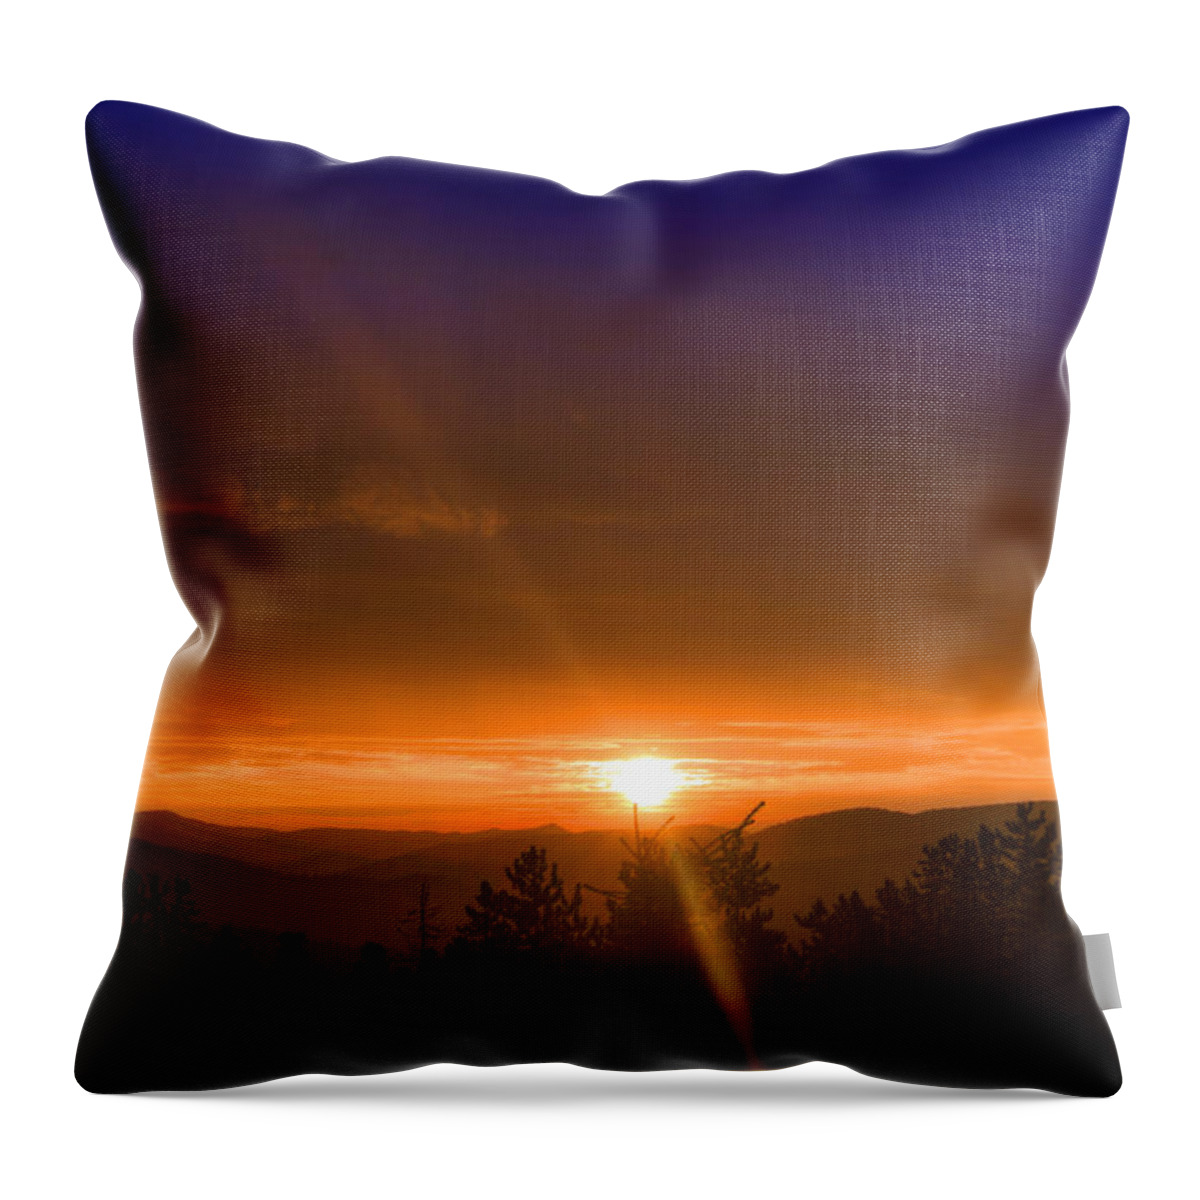 Sunrise Throw Pillow featuring the photograph Golden Sunrise by Matt Swinden